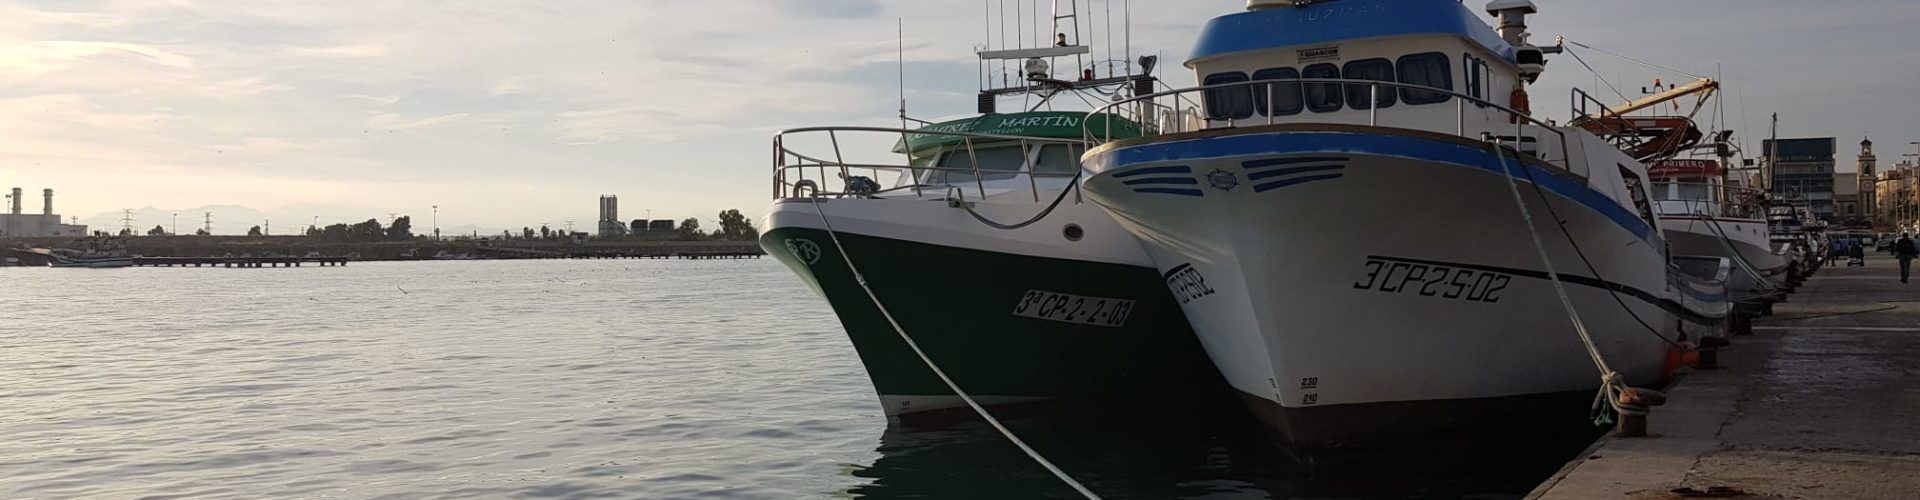 Les tres barques de cércol de Vinaròs tornen a faenar després de l’aturada biològica